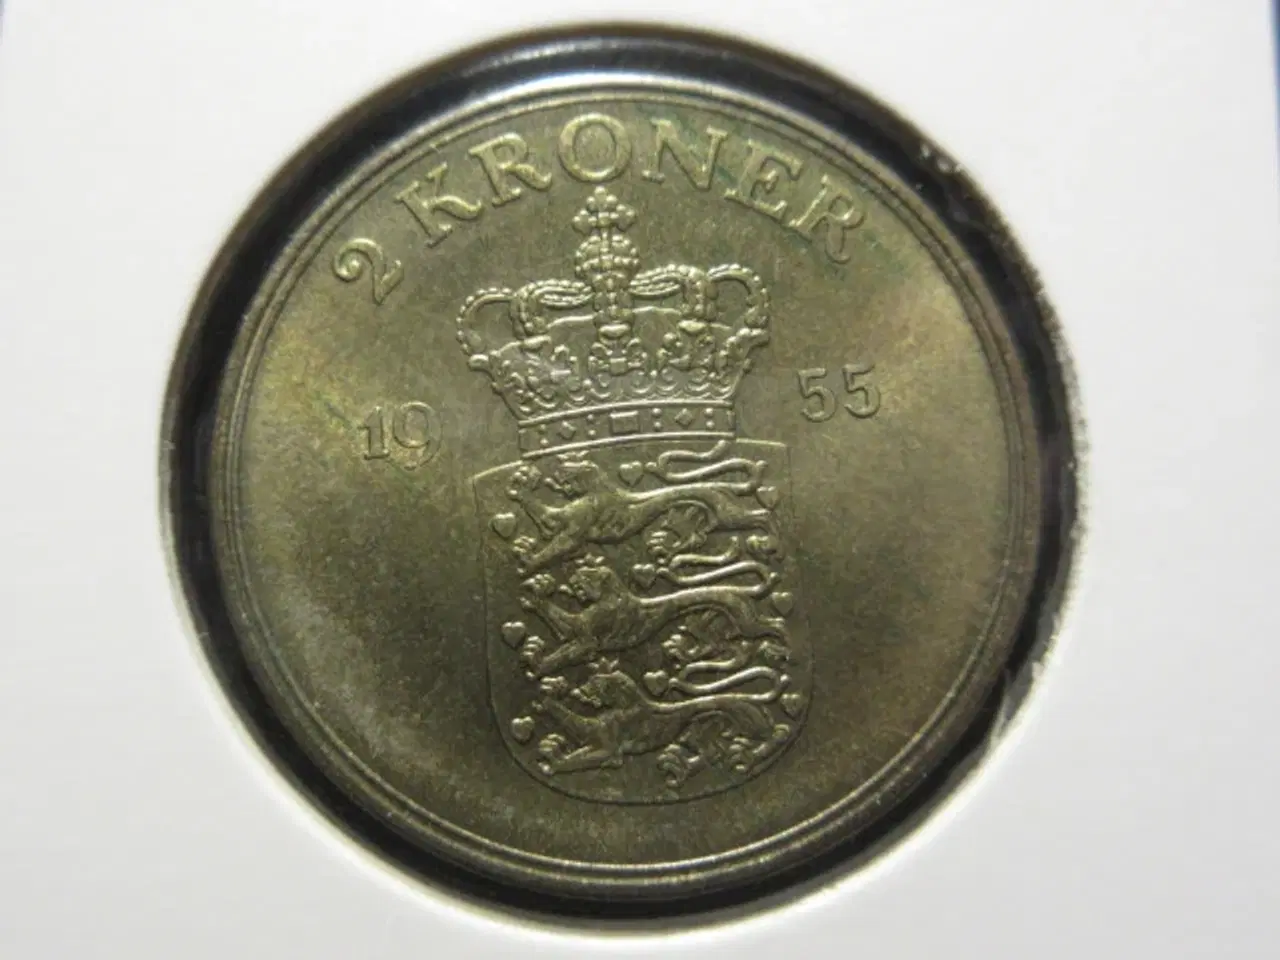 Billede 1 - 2 kroner 1955 unc